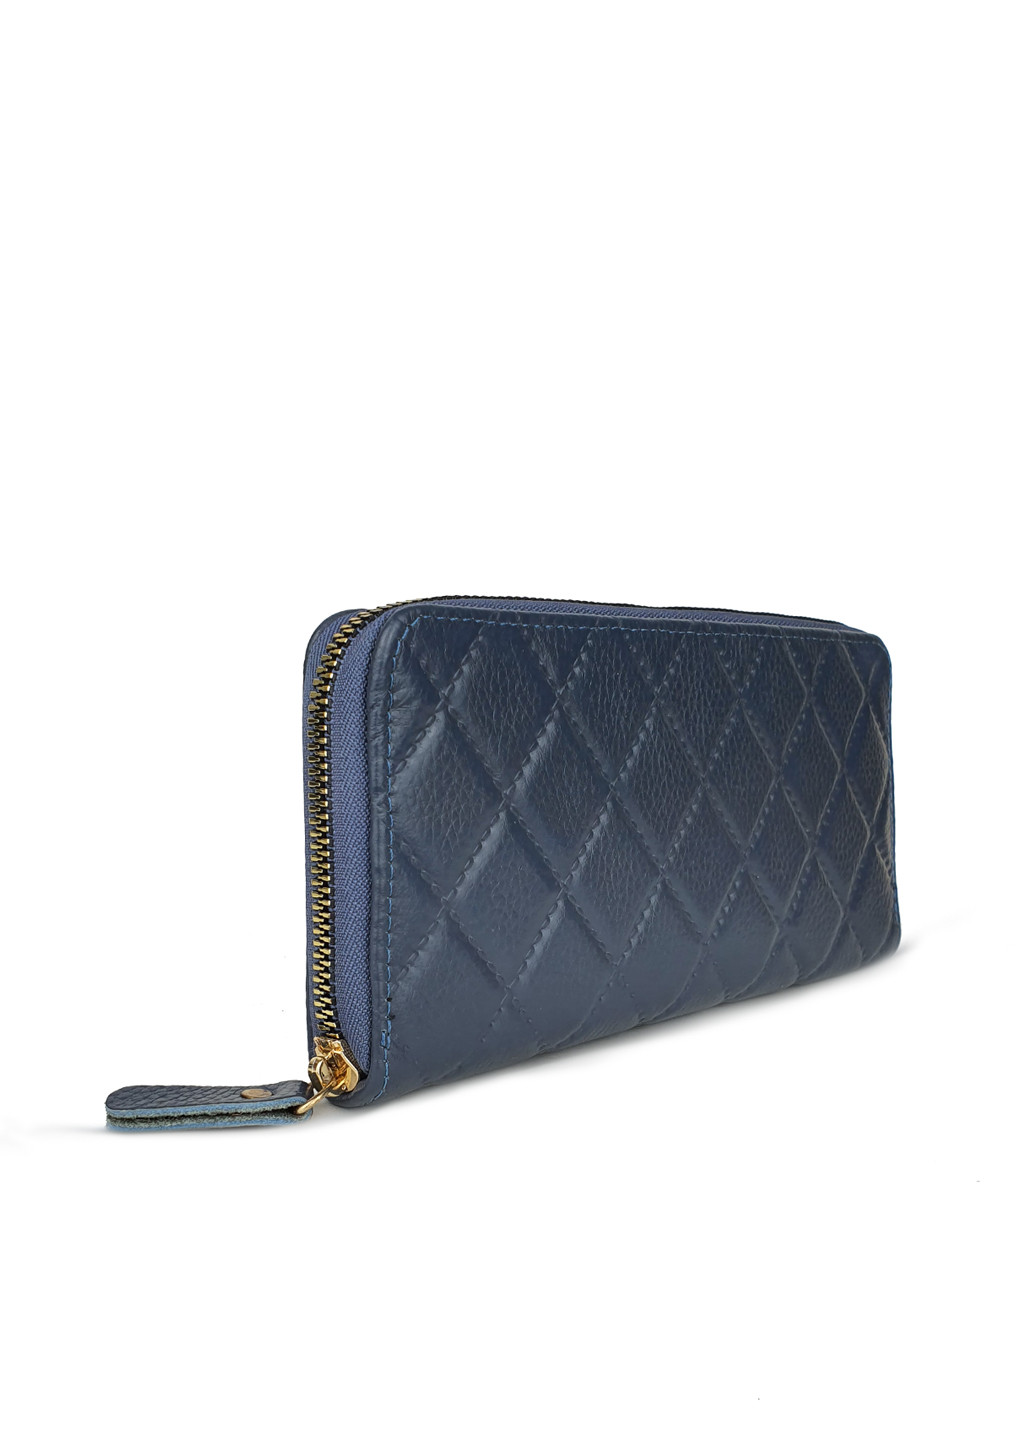 Женский кошелек портмоне на молнии кожаный синего цвета 19*10*2 Fashion (252033303)